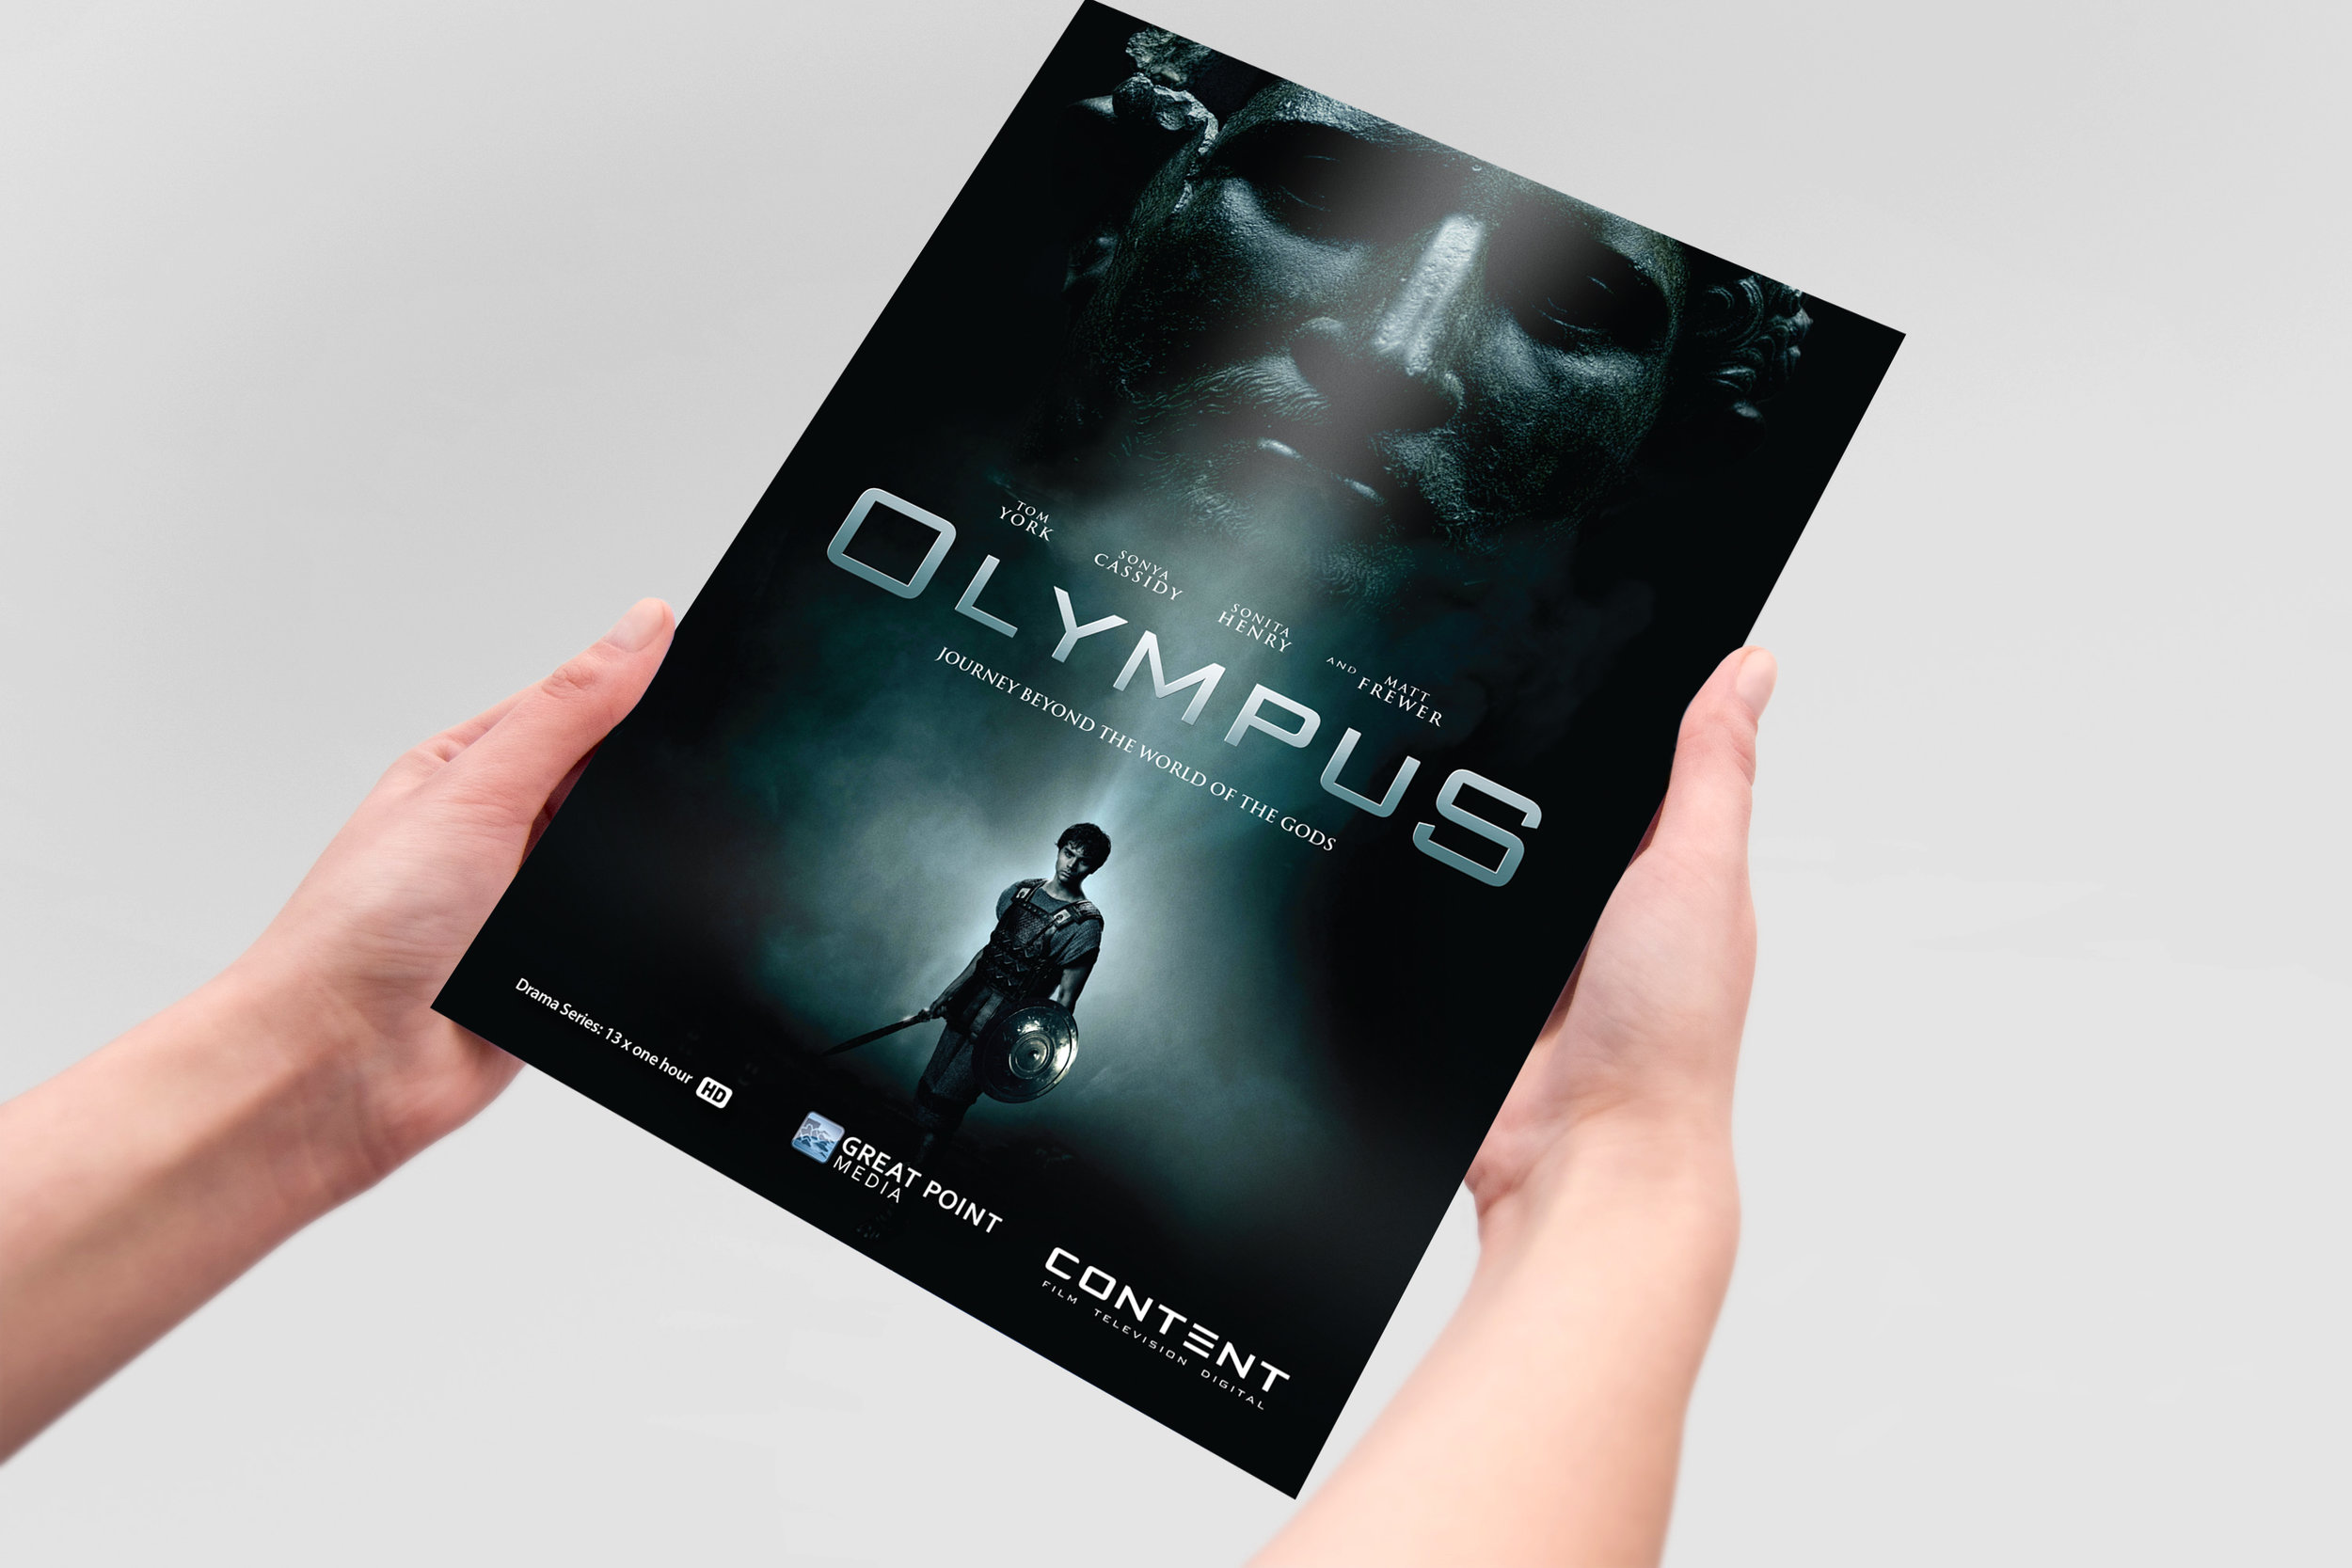 OLYMPUS-brochure-cover.jpg